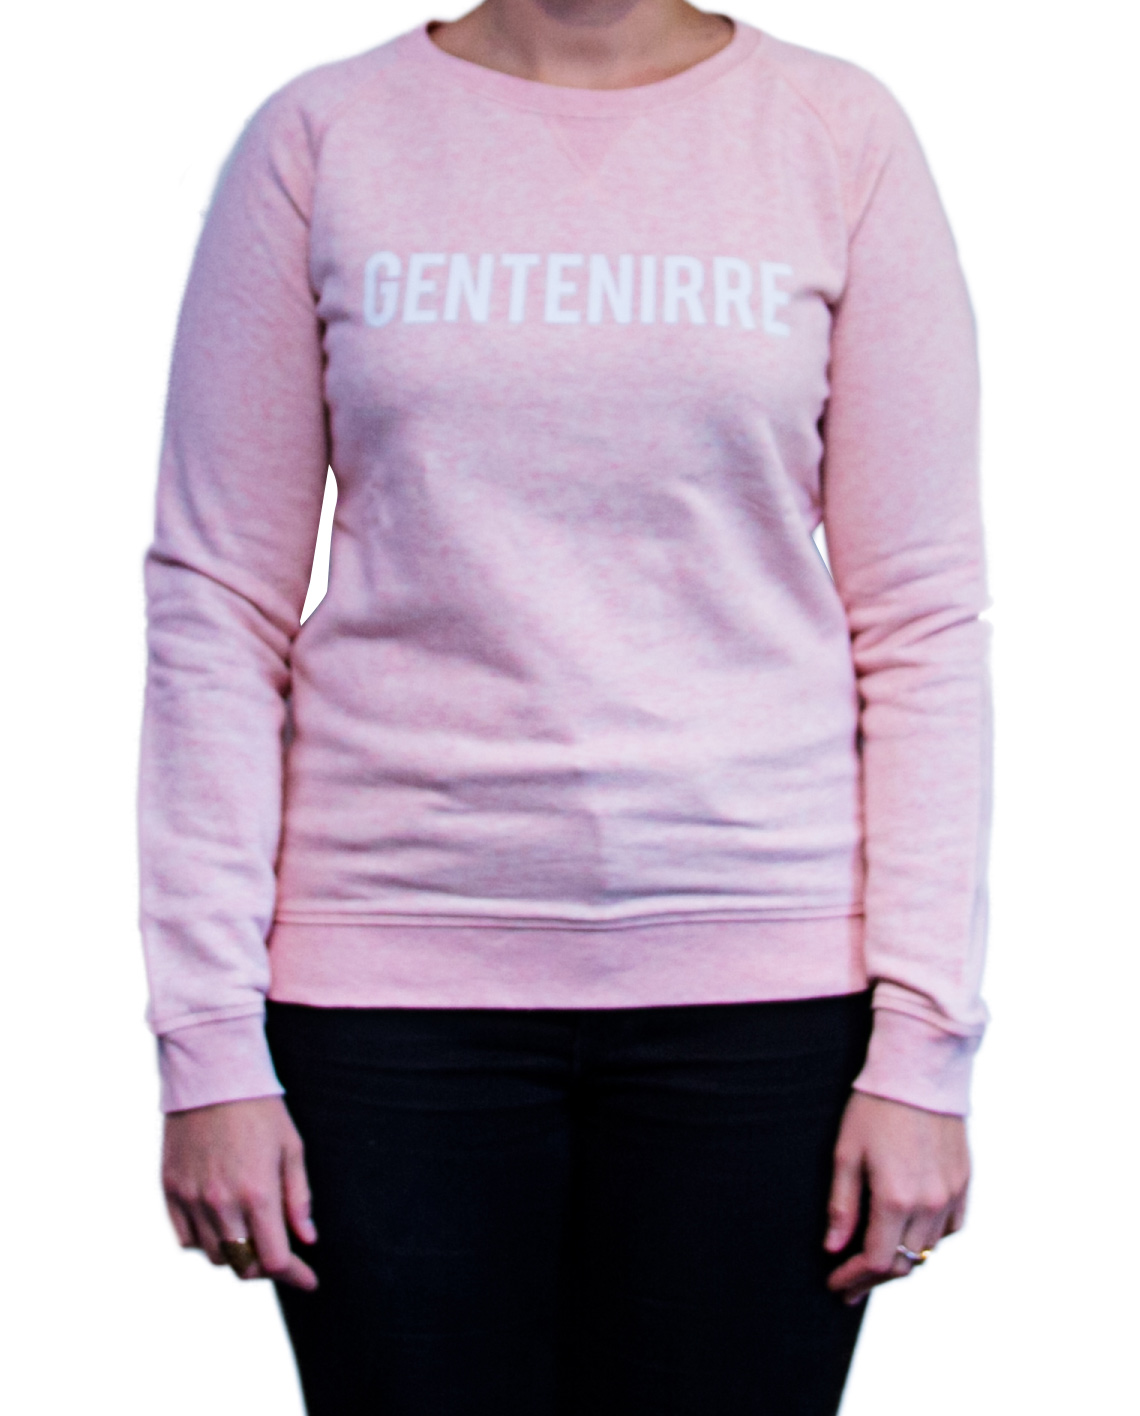 sweater gentenirre vrouw roze